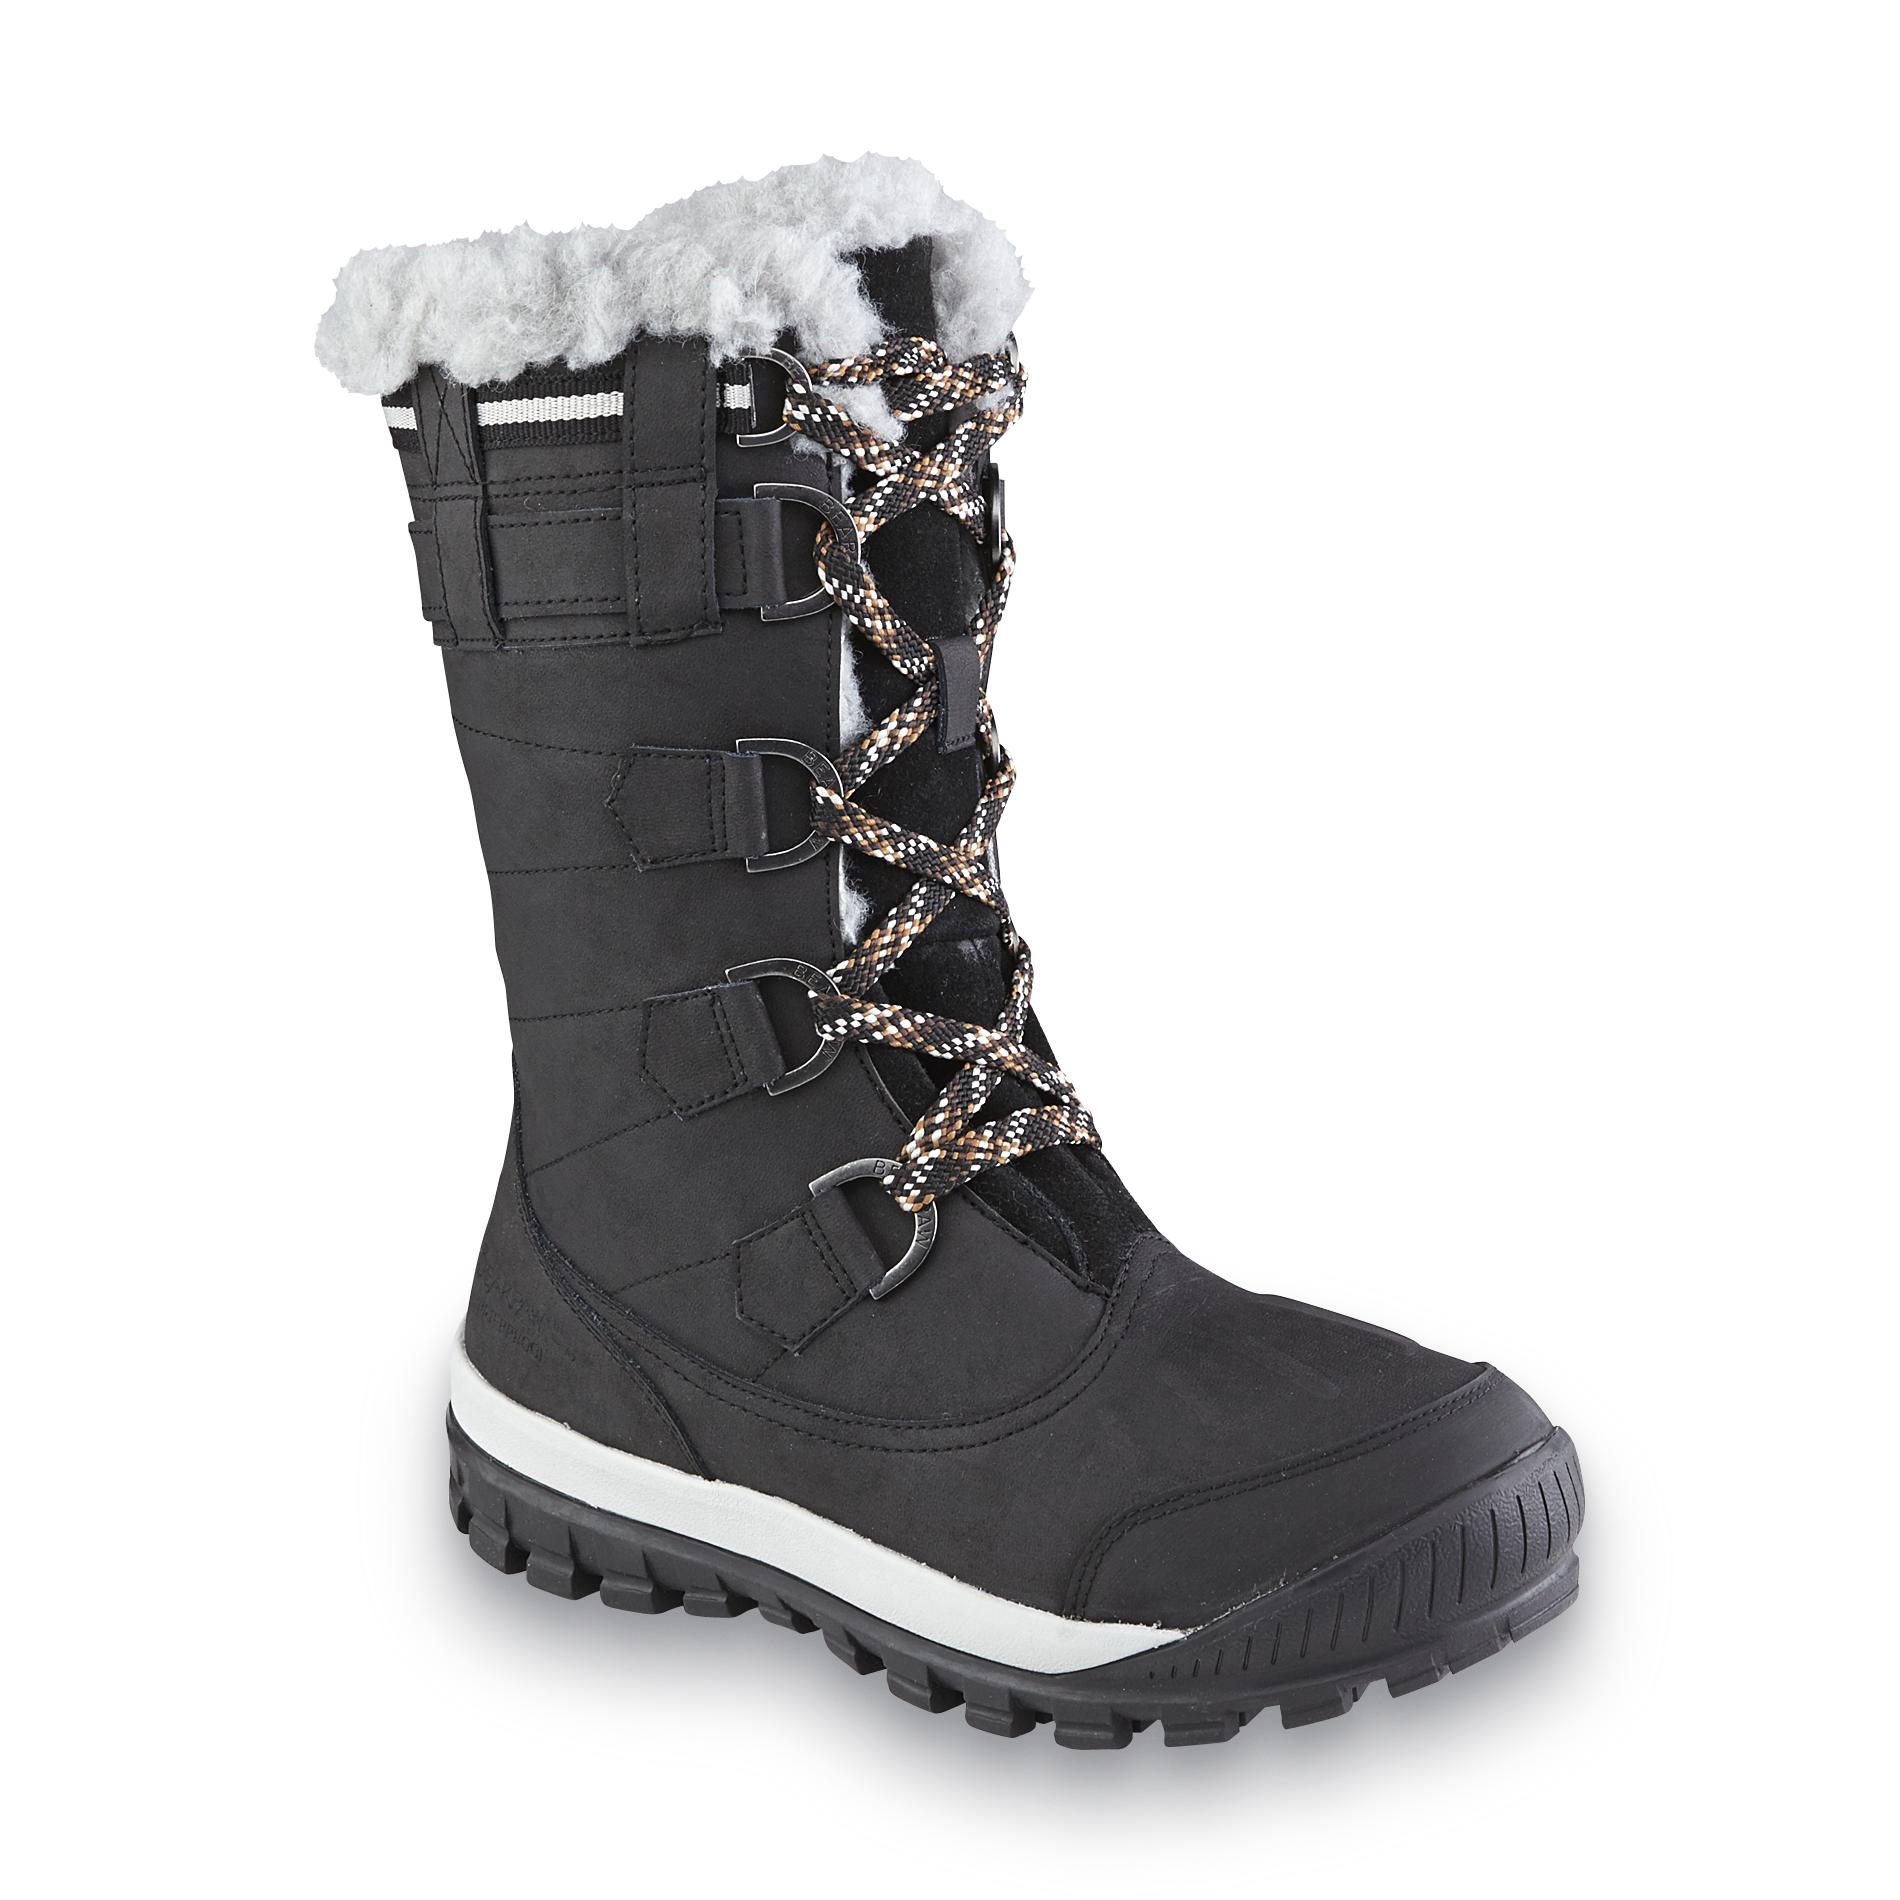 bearpaw waterproof winter boots